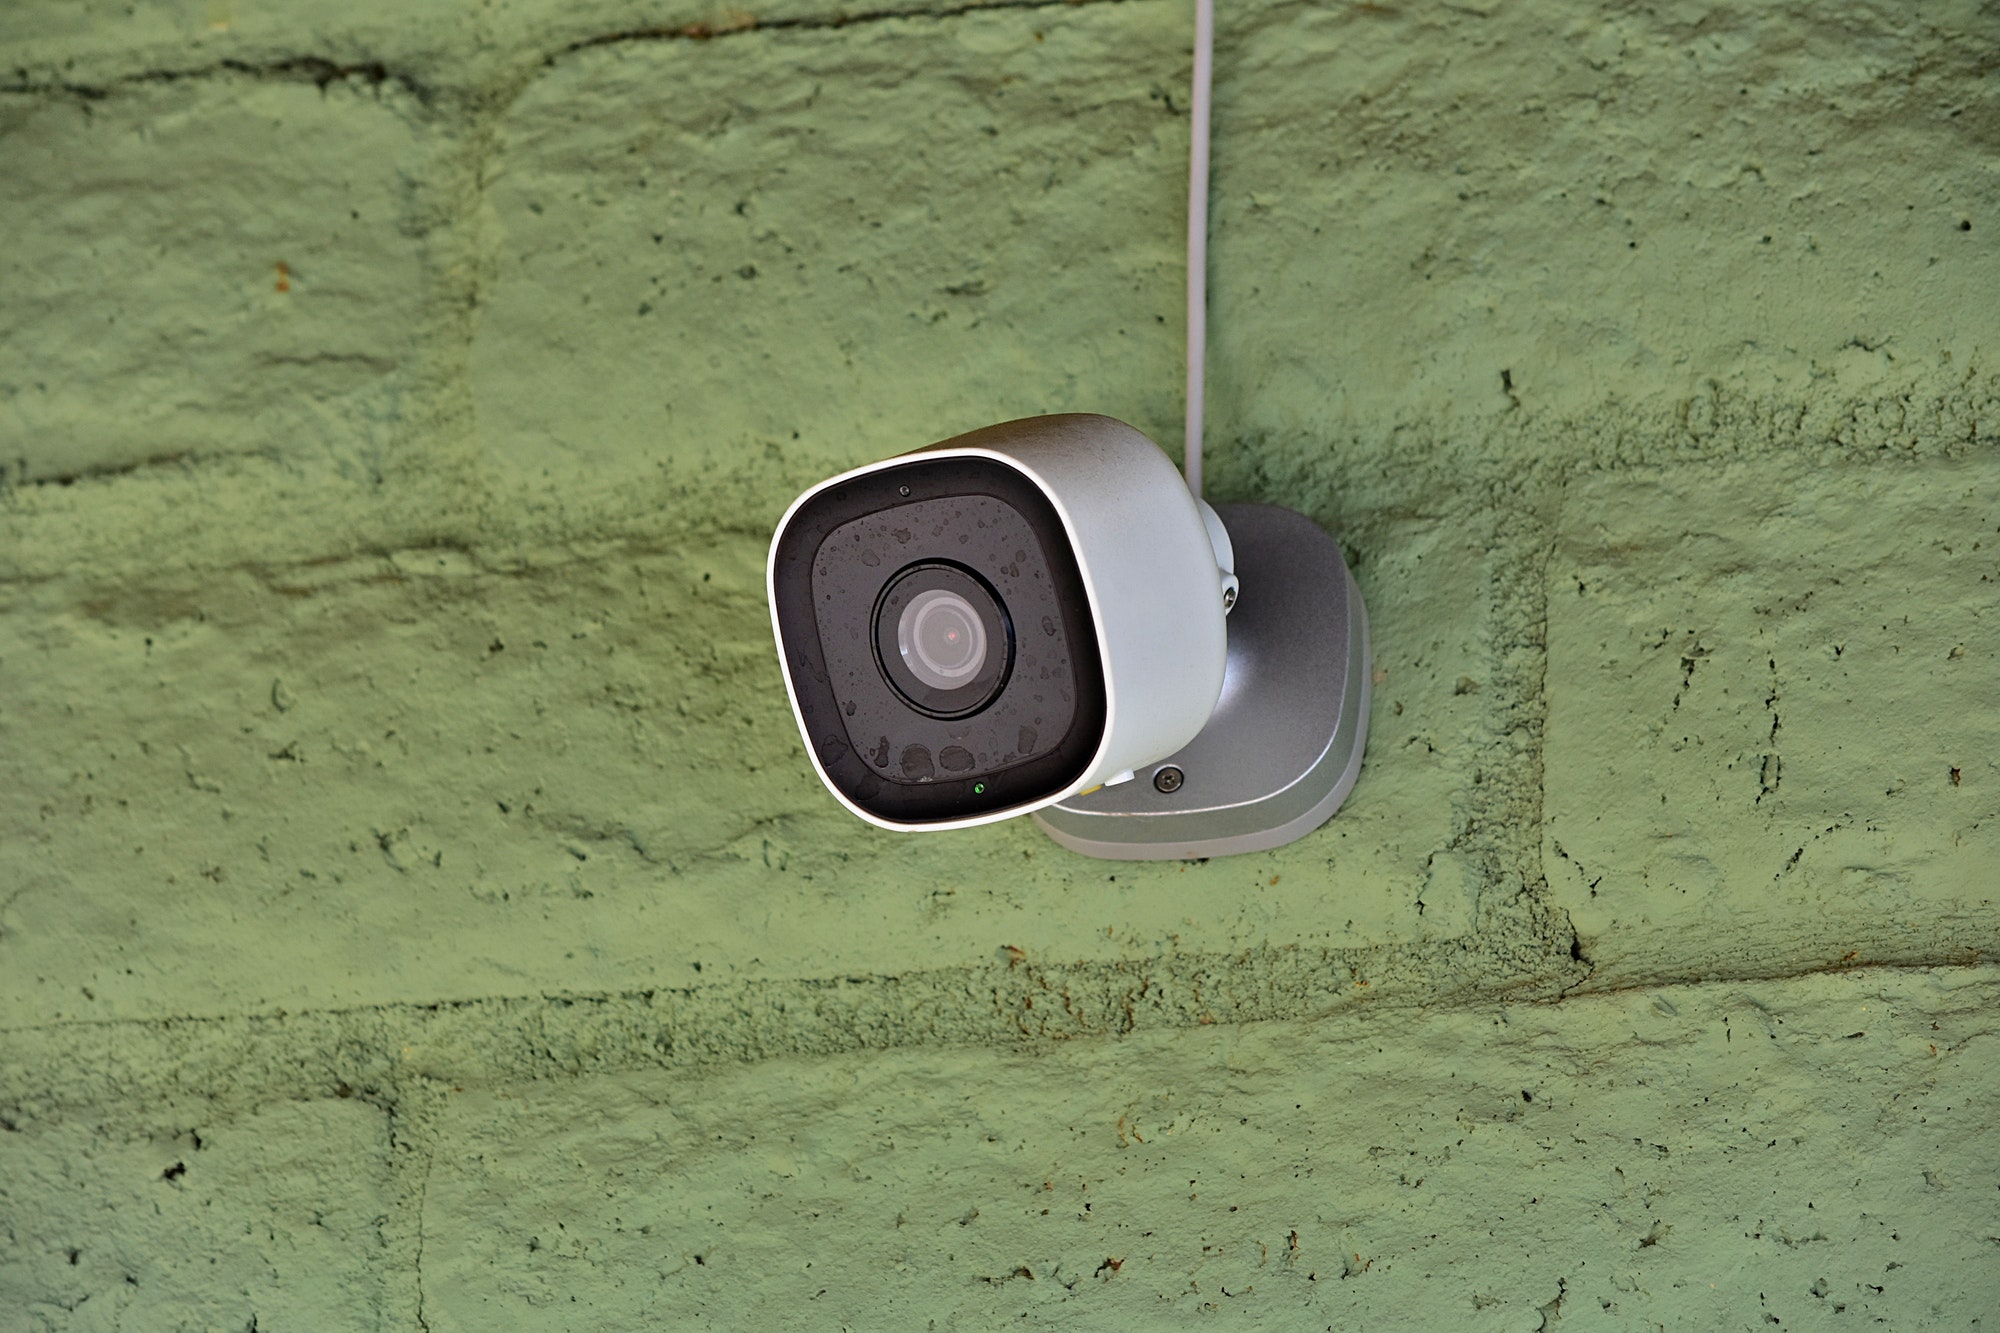 A home security camera